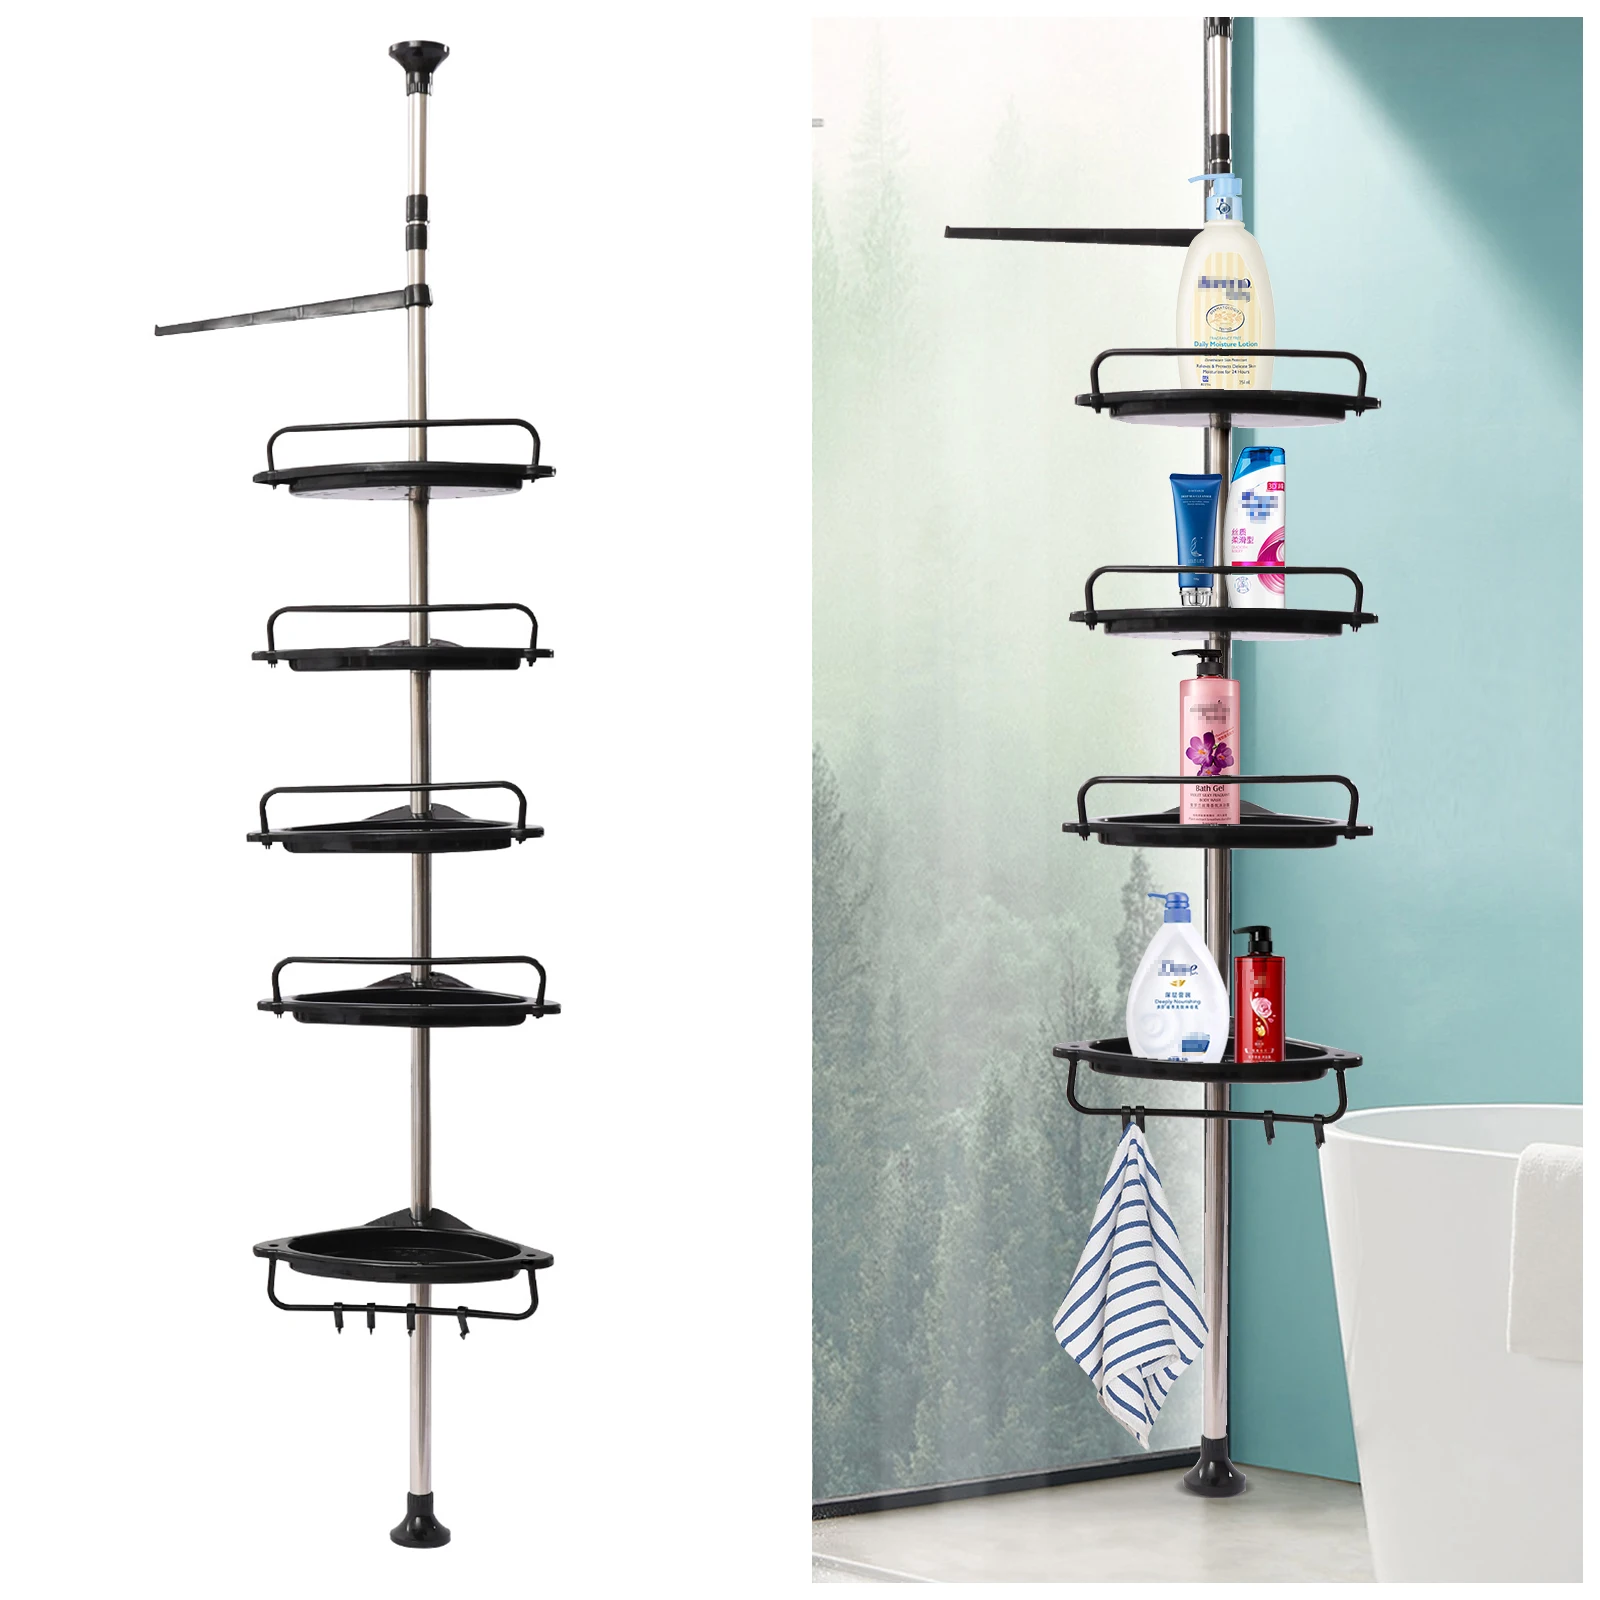 https://ae01.alicdn.com/kf/Sdd8eadfc5db64c58a513346dd9bf26ced/4-5-Layers-Shower-Corner-Pole-Caddy-Bathroom-Storage-Shelf-w-Hanging-Hook-Wall-Shelf-Corner.jpg